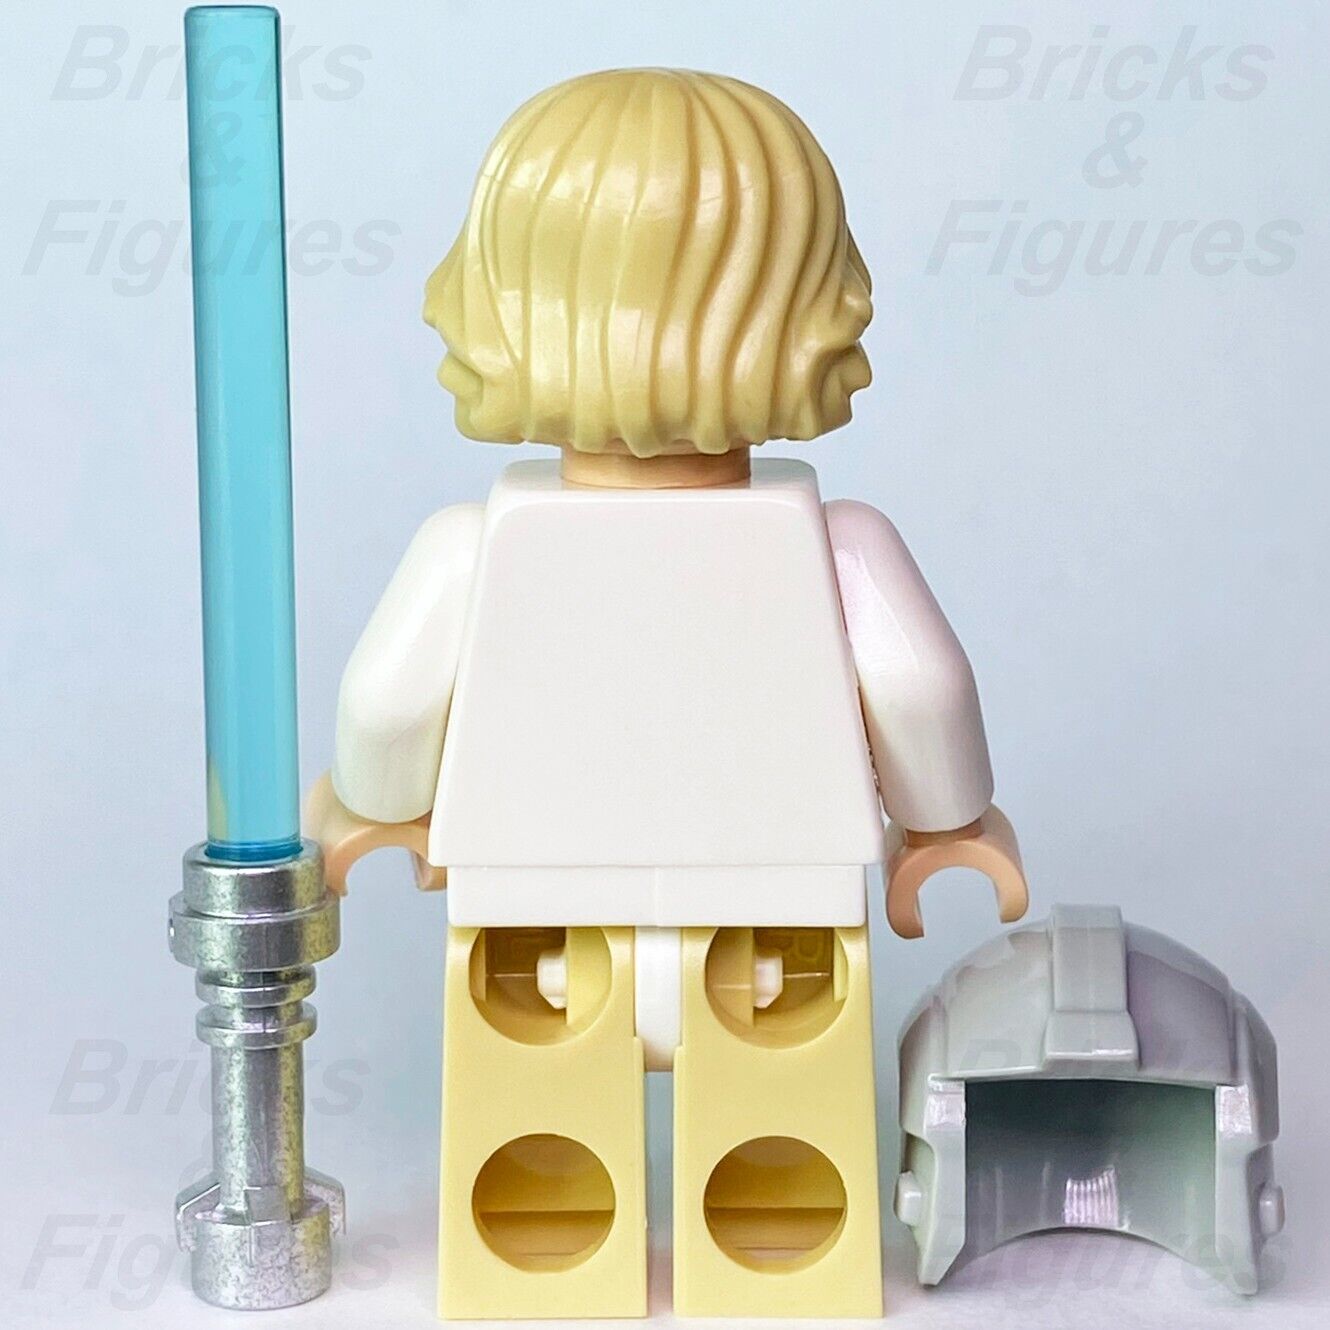 LEGO Star Wars Luke Skywalker Minifigure Blast Shield Helmet Jedi 7965 sw0335 - Bricks & Figures